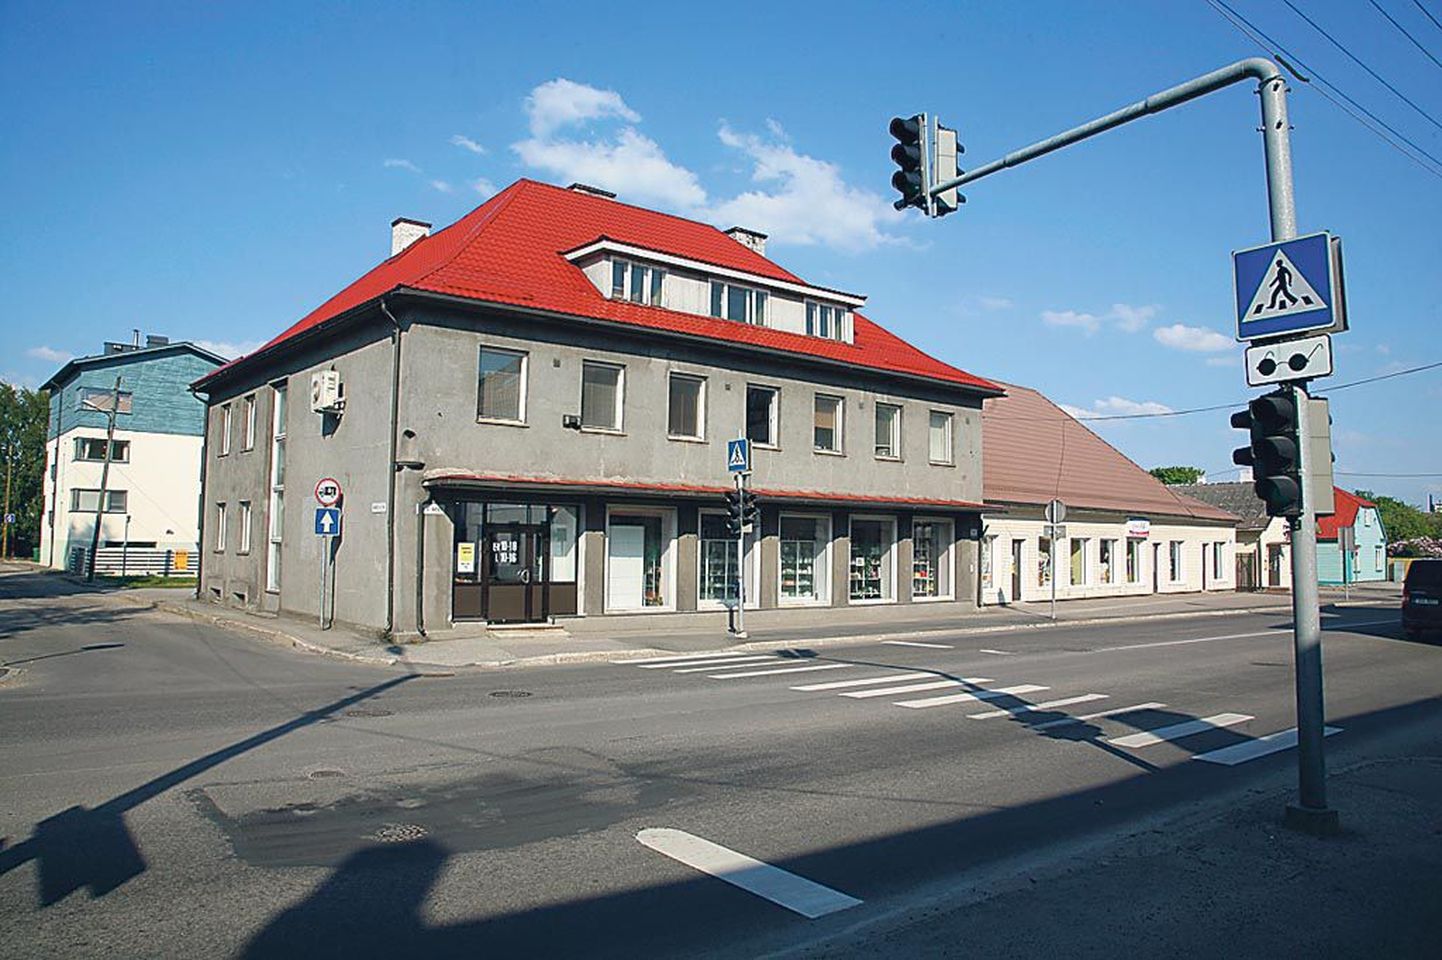 Riia maantee 18 kaubandushoone ehitas 1938. aastal Pärnu majandusühisus. Enne Teist maailmasõda asusid maja teisel korrusel ühisuse töötajate korterid, nüüd on seal kaubamaja omanikfirma Pärnu majandusühistu kontoriruumid.